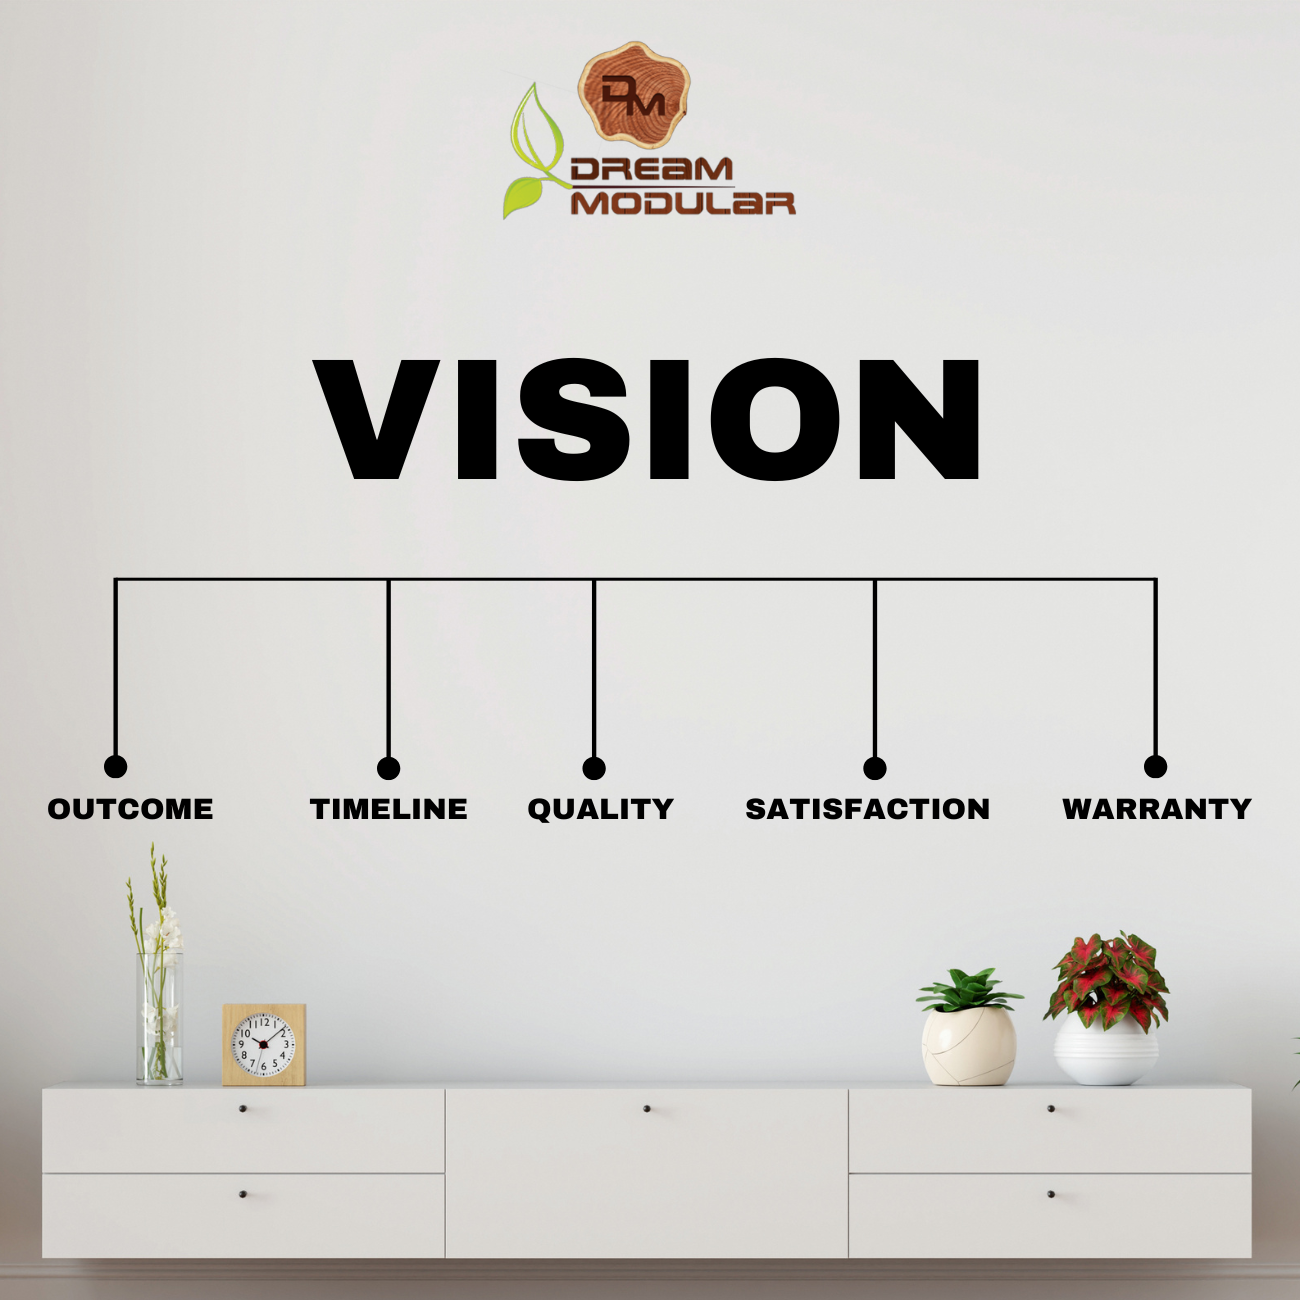 Our Dream Modular Vision